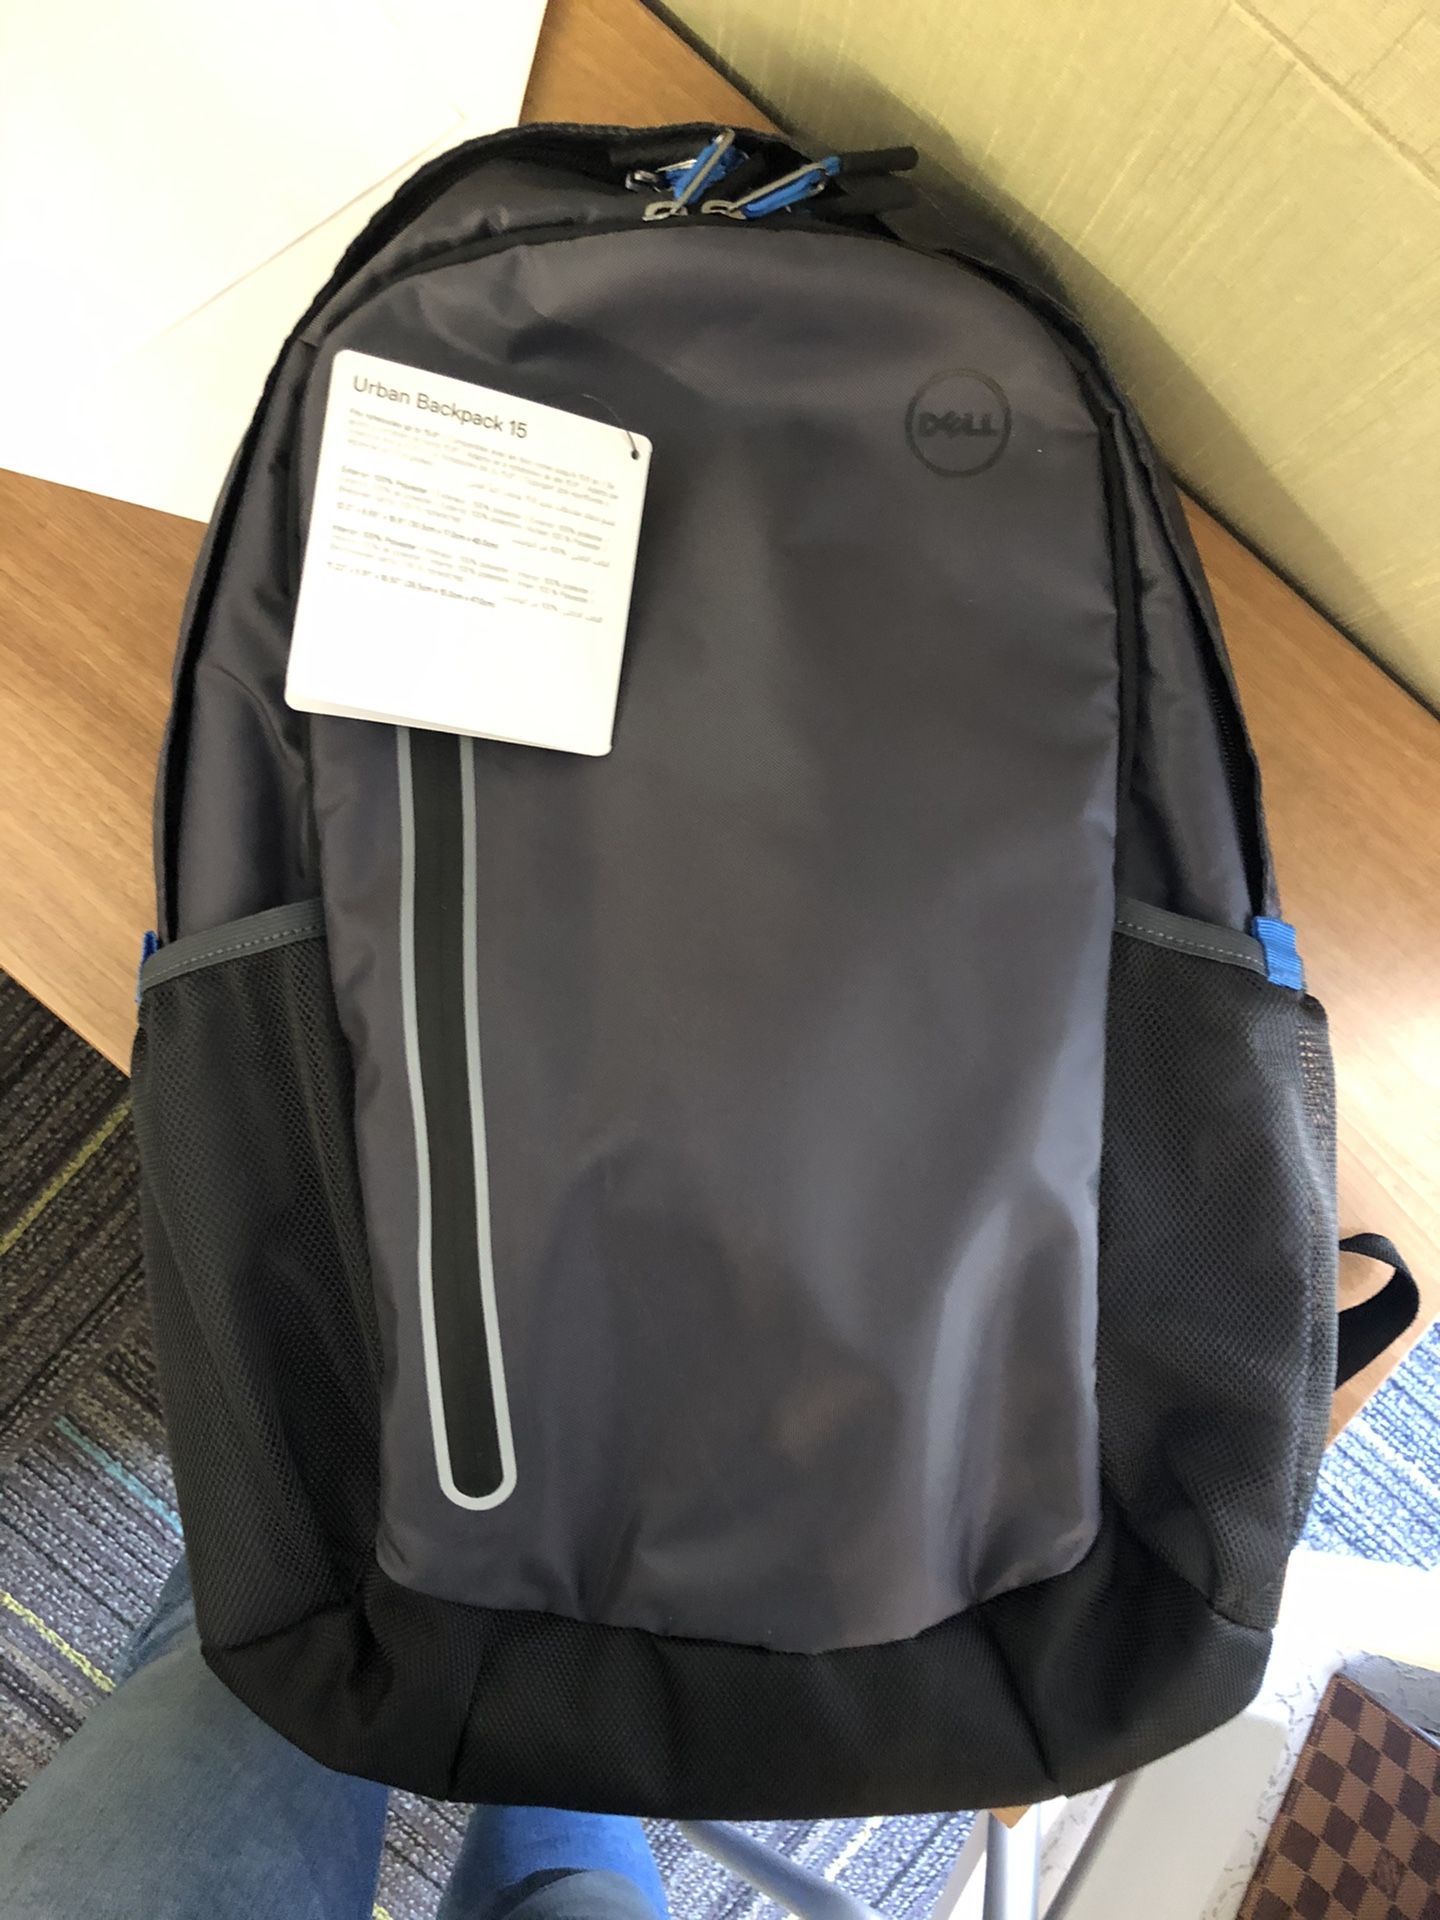 brandnew laptop backpack